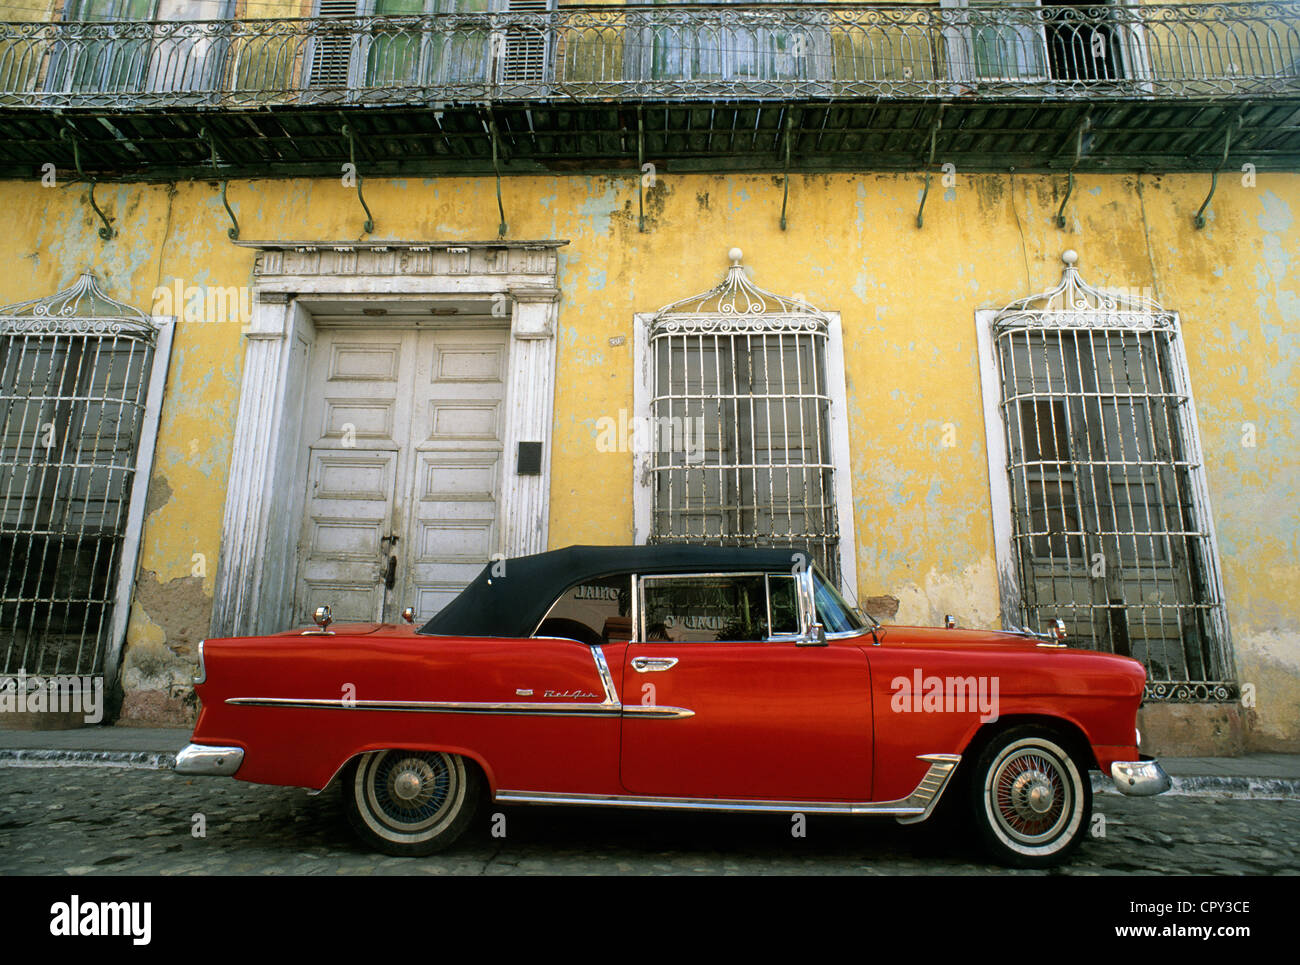 Kuba, Provinz Sancti Spiritus, Trinidad de Cuba Weltkulturerbe der UNESCO, amerikanisches Auto vor einer verblichenen Fassade Stockfoto